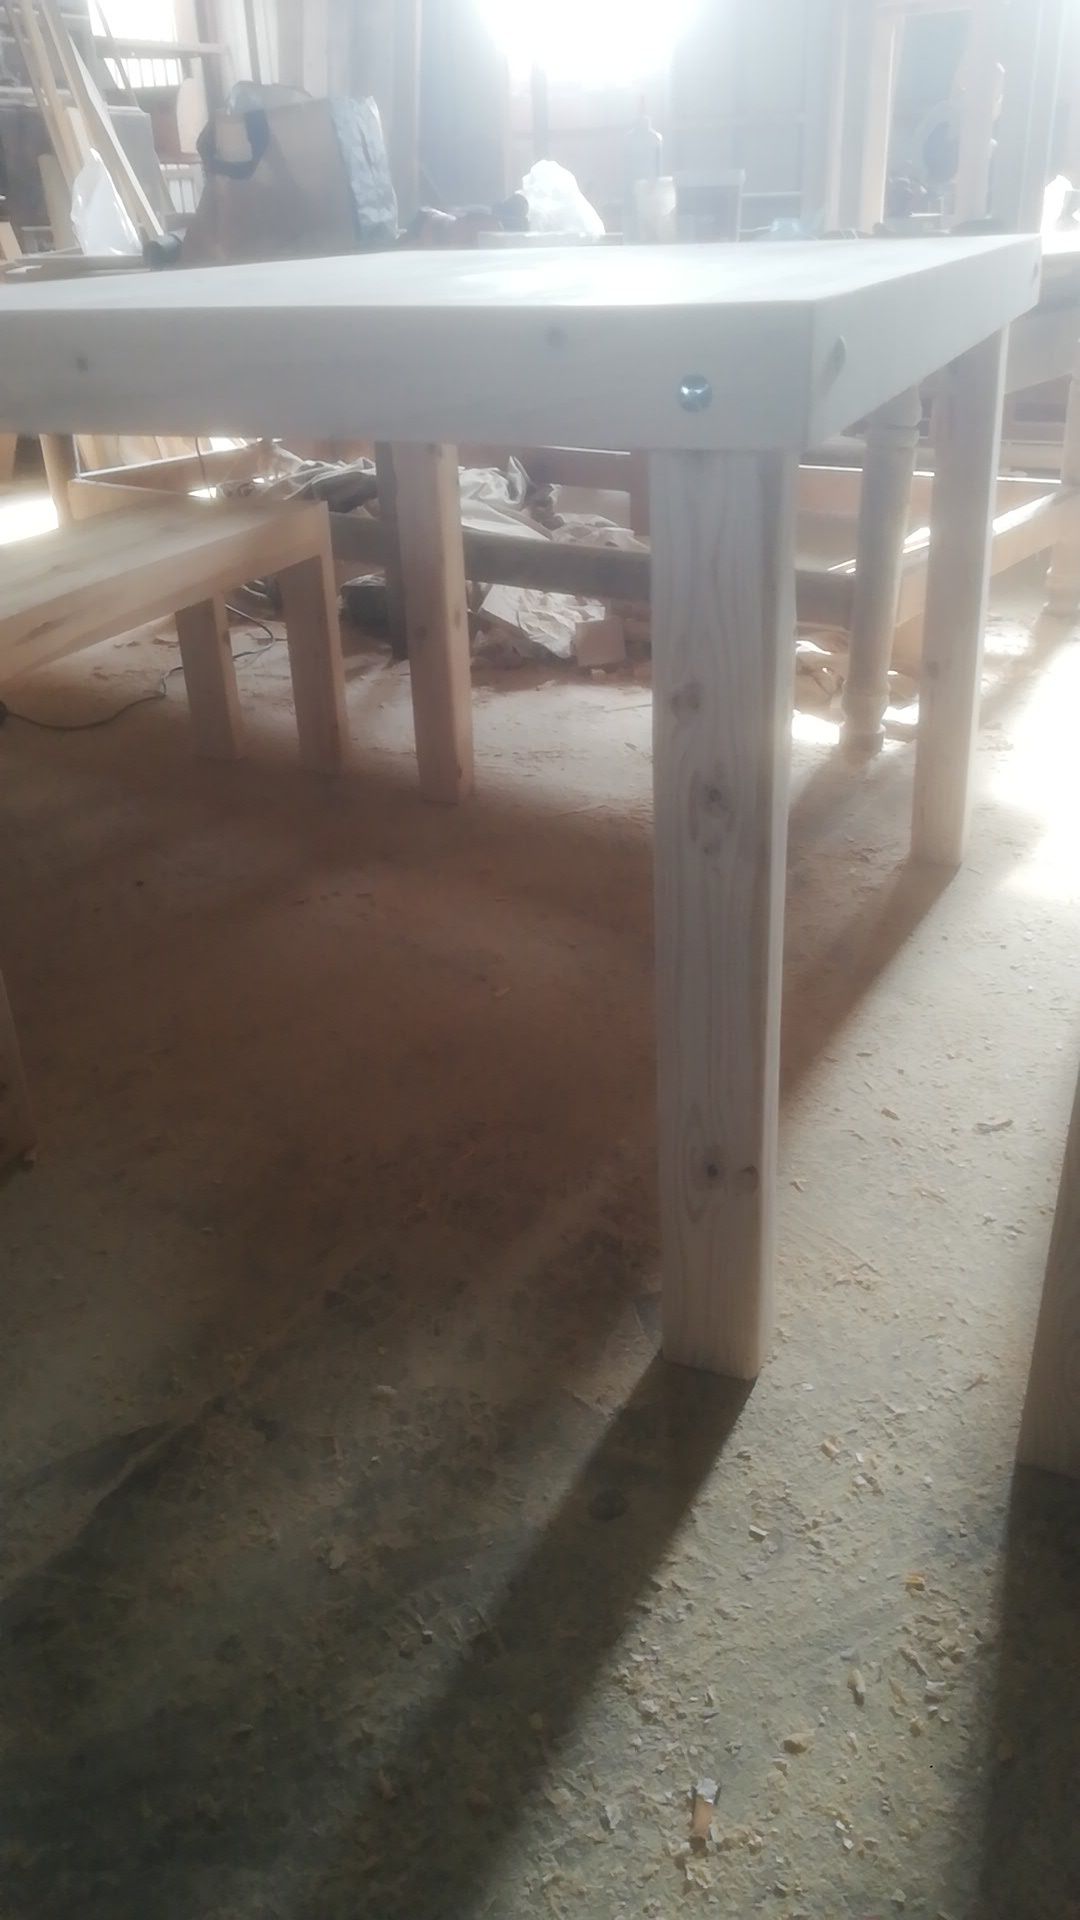 Mesa em madeira com 4 bancos corridos.